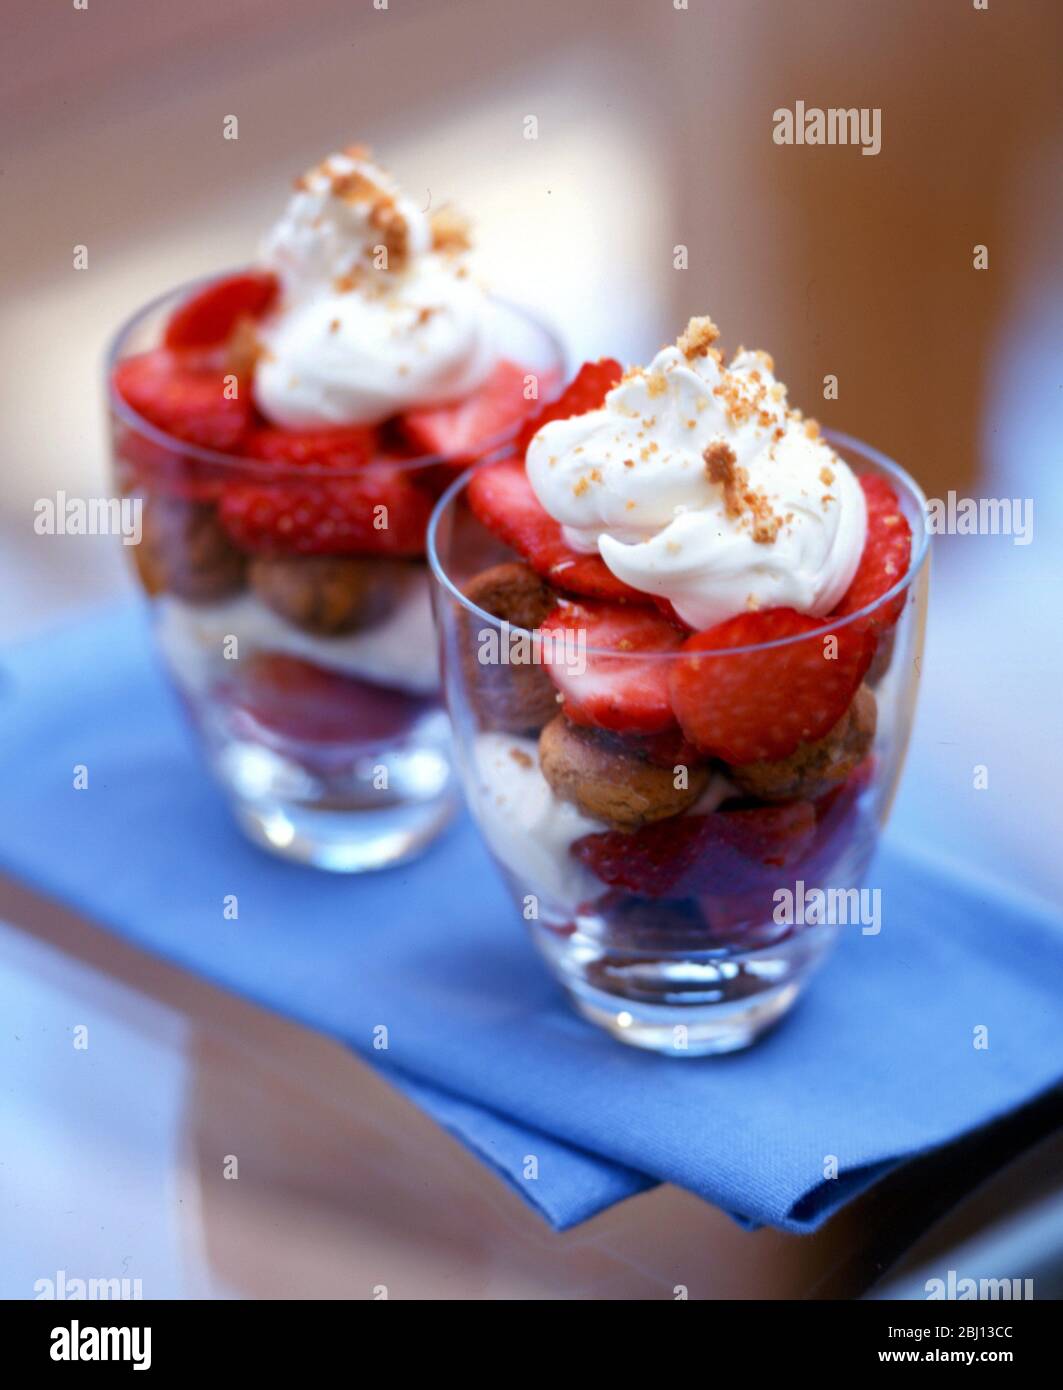 Sommerdessert von Ratafia-Keksen mit frischen, halbierten Erdbeeren und Schlagsahne mit gehackter Nussauflage - Stockfoto